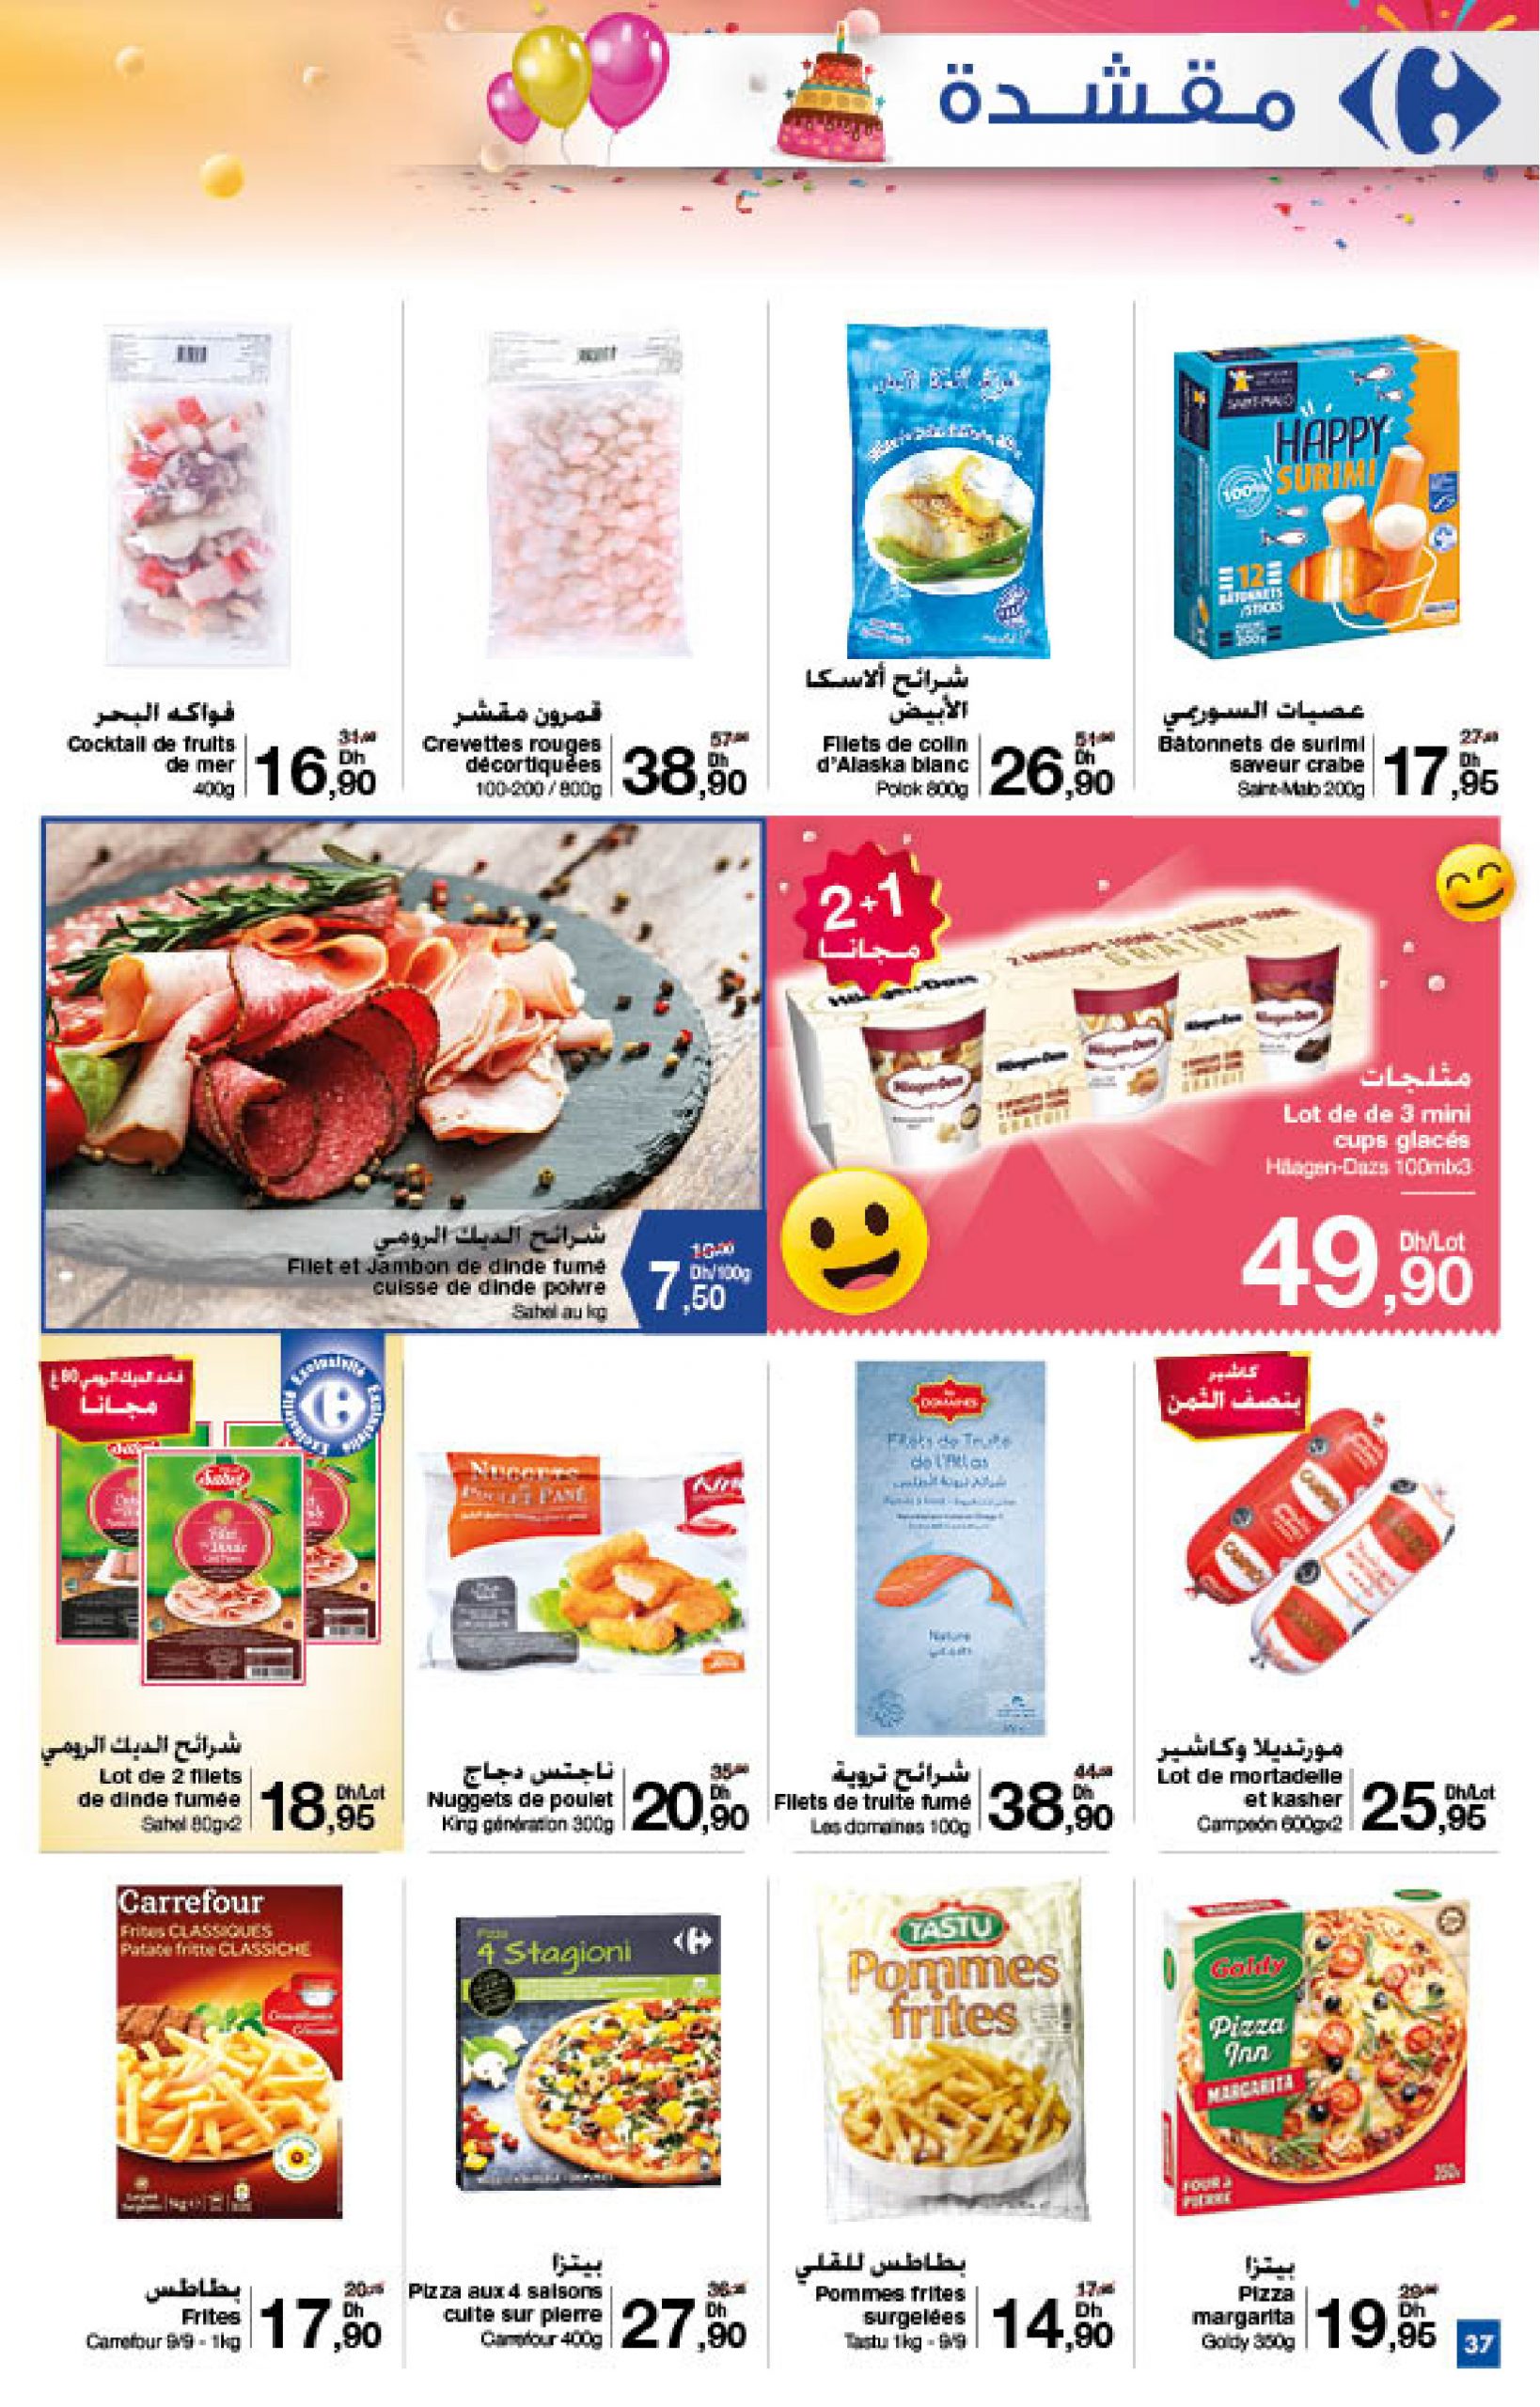 37-Nouveautés Carrefour Catalogue Novembre 2020